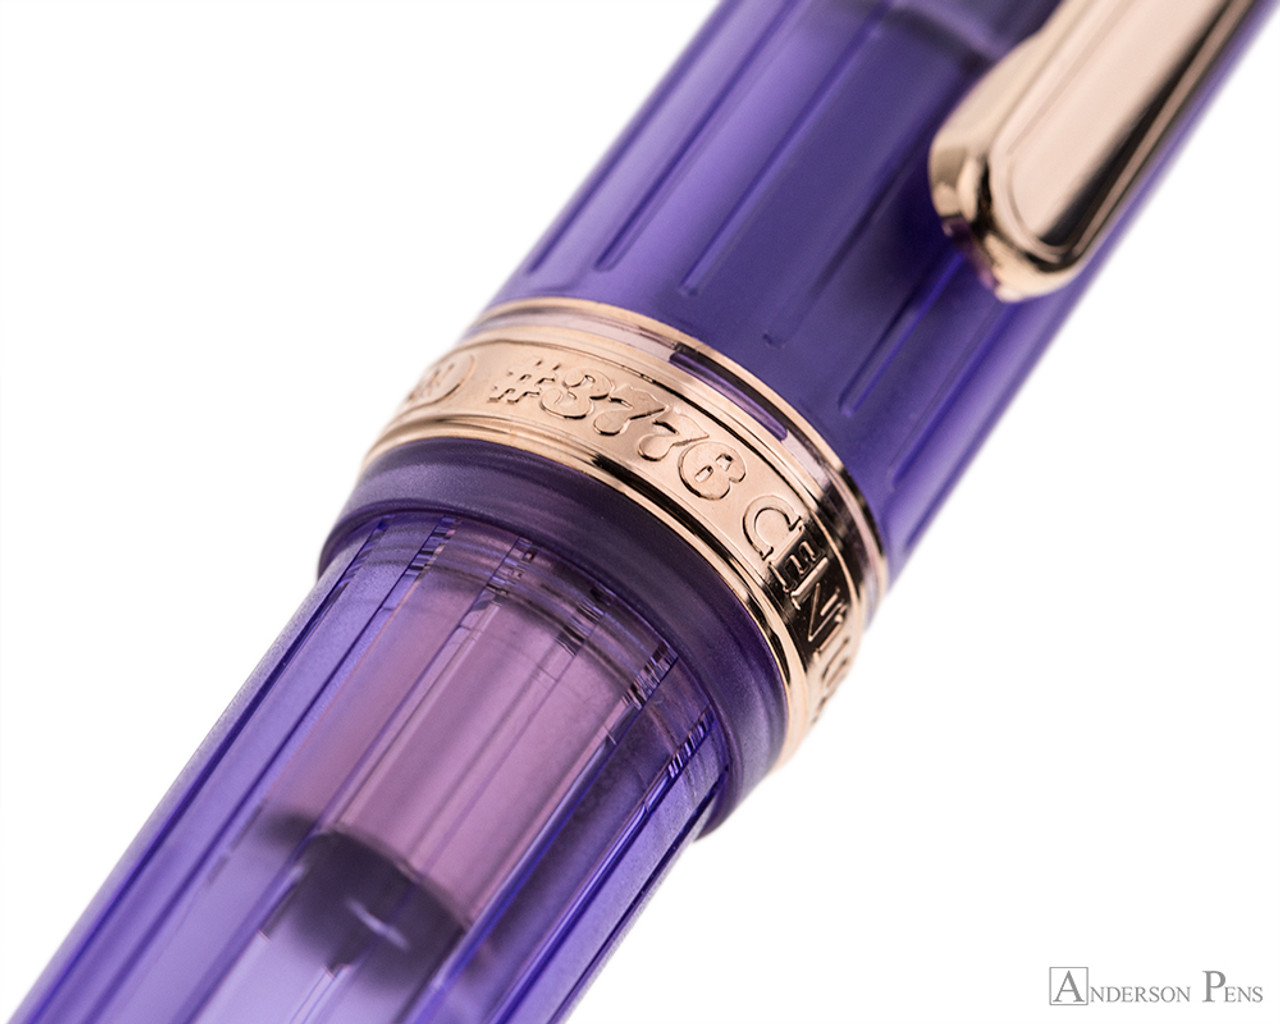 PLATINUM #3776 Century Nice Fountain Pen - Lavender